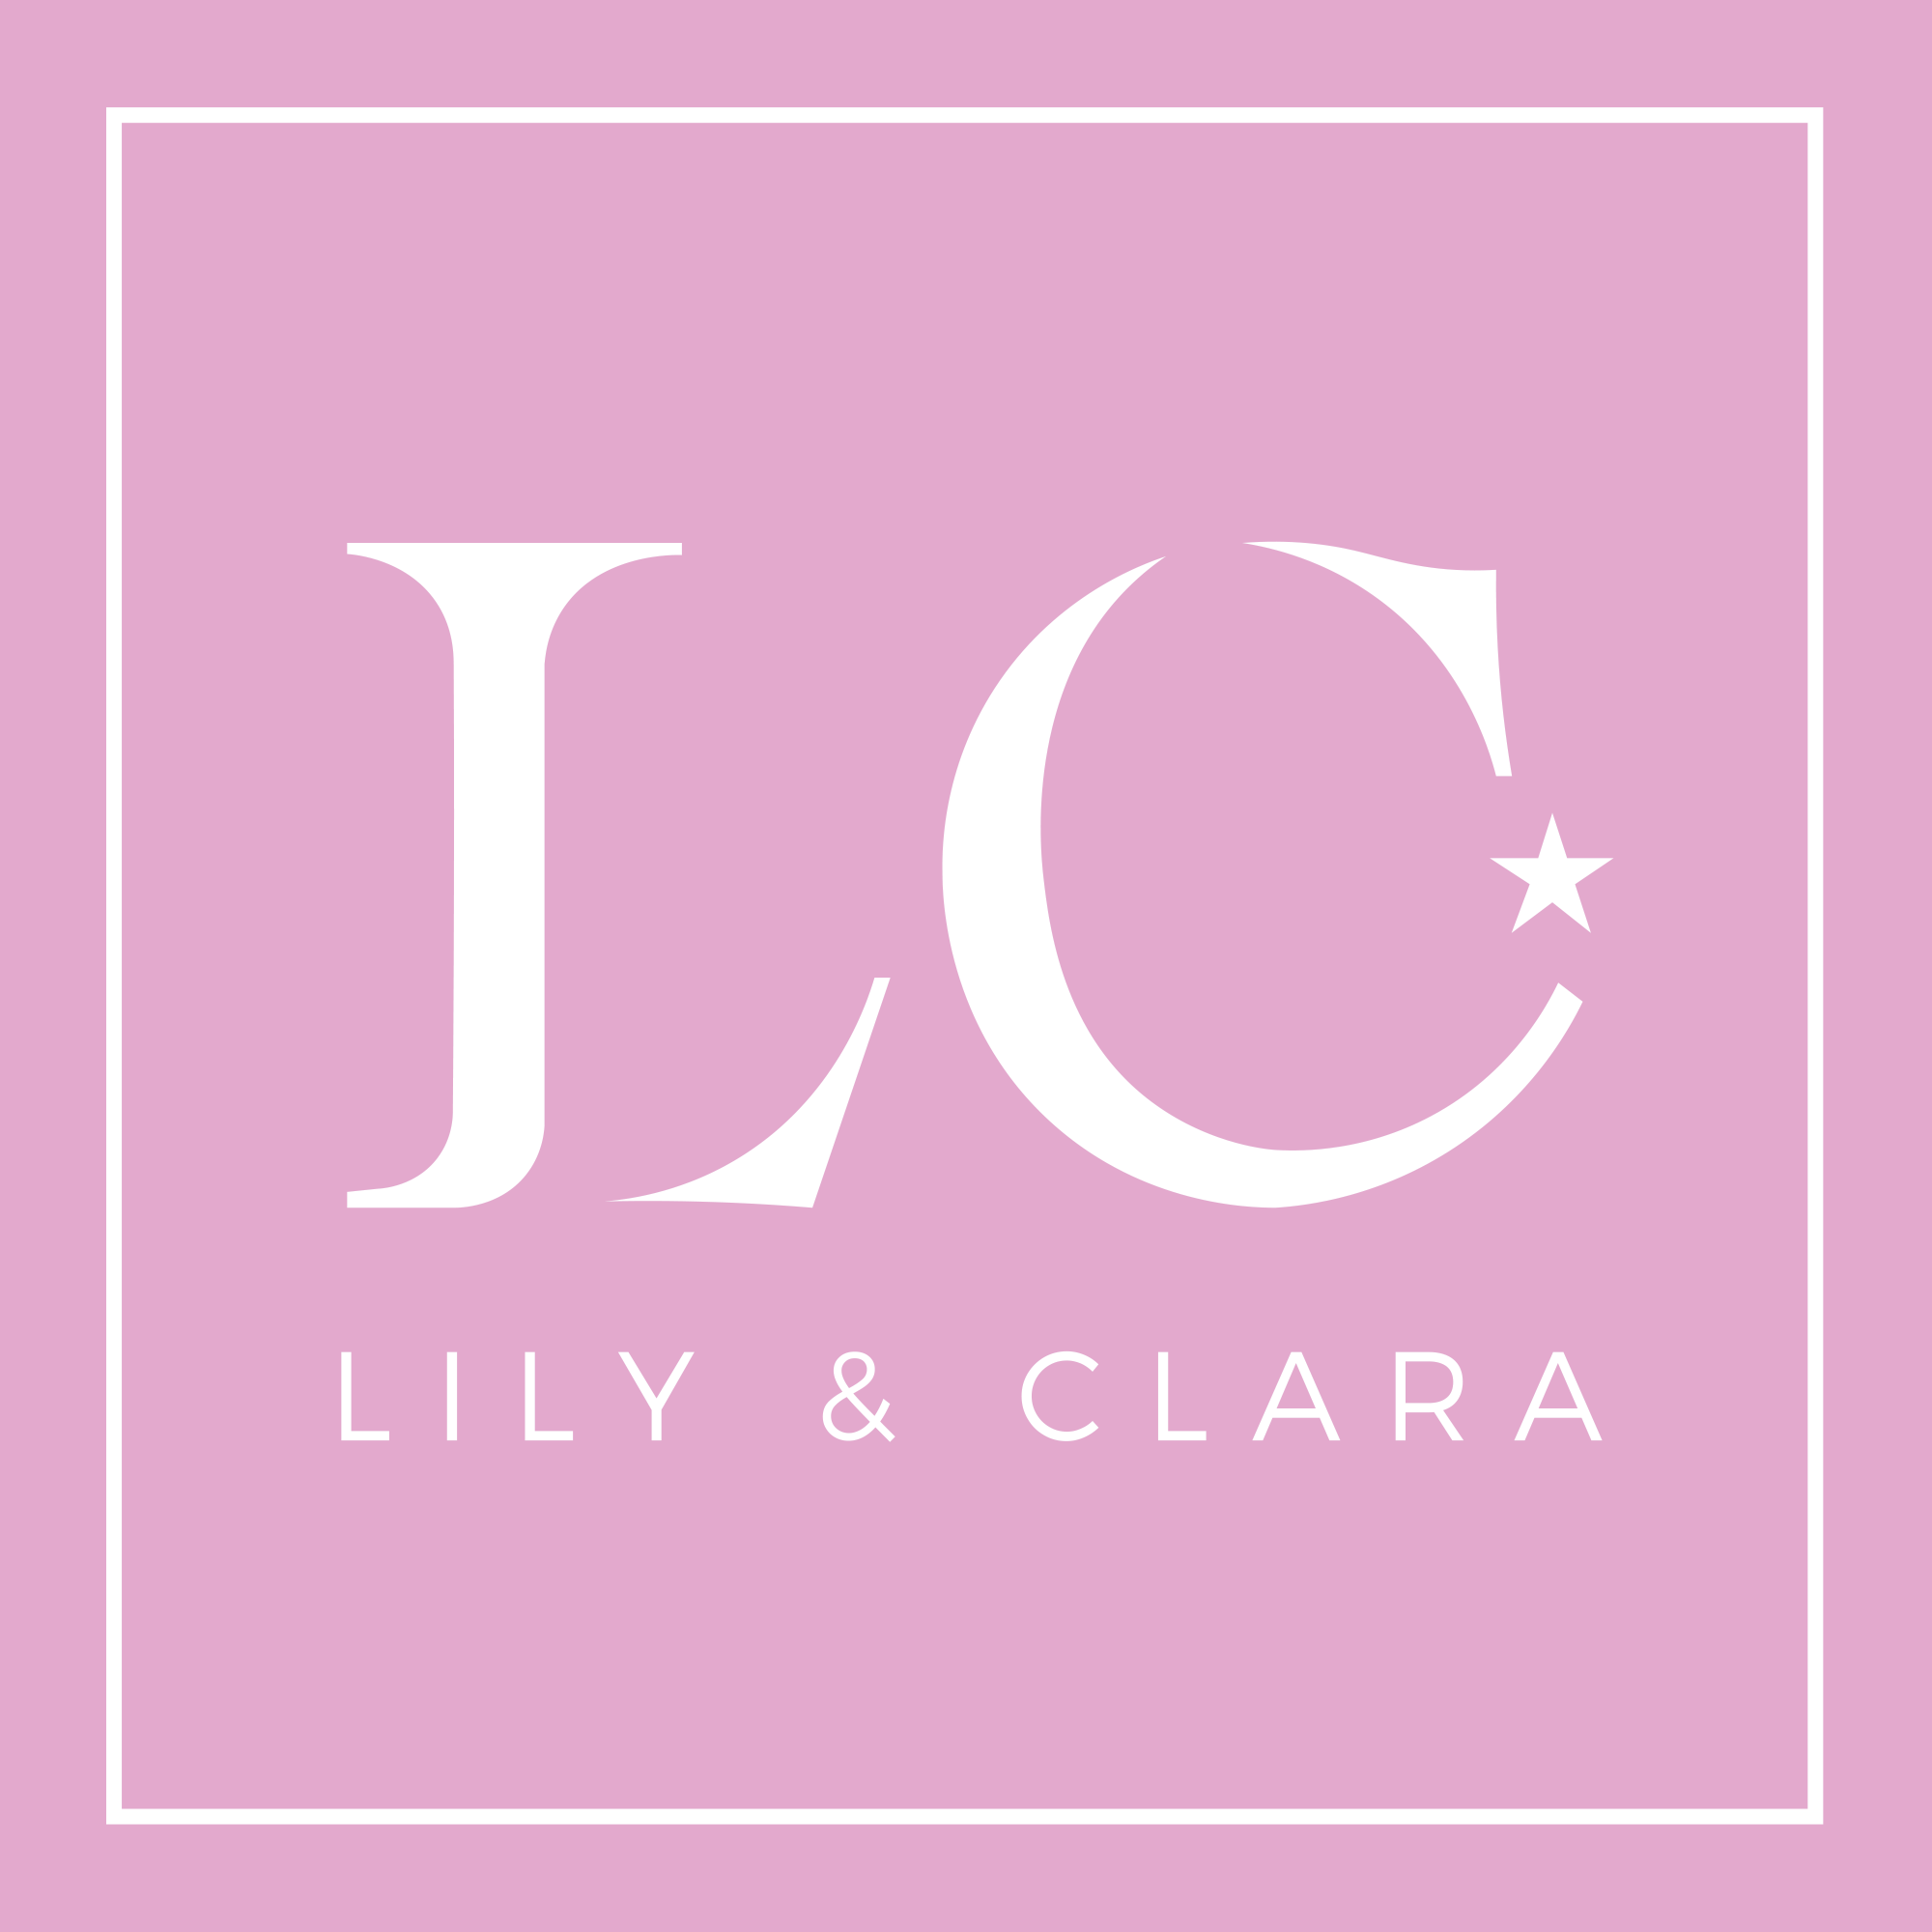 Lily & Clara